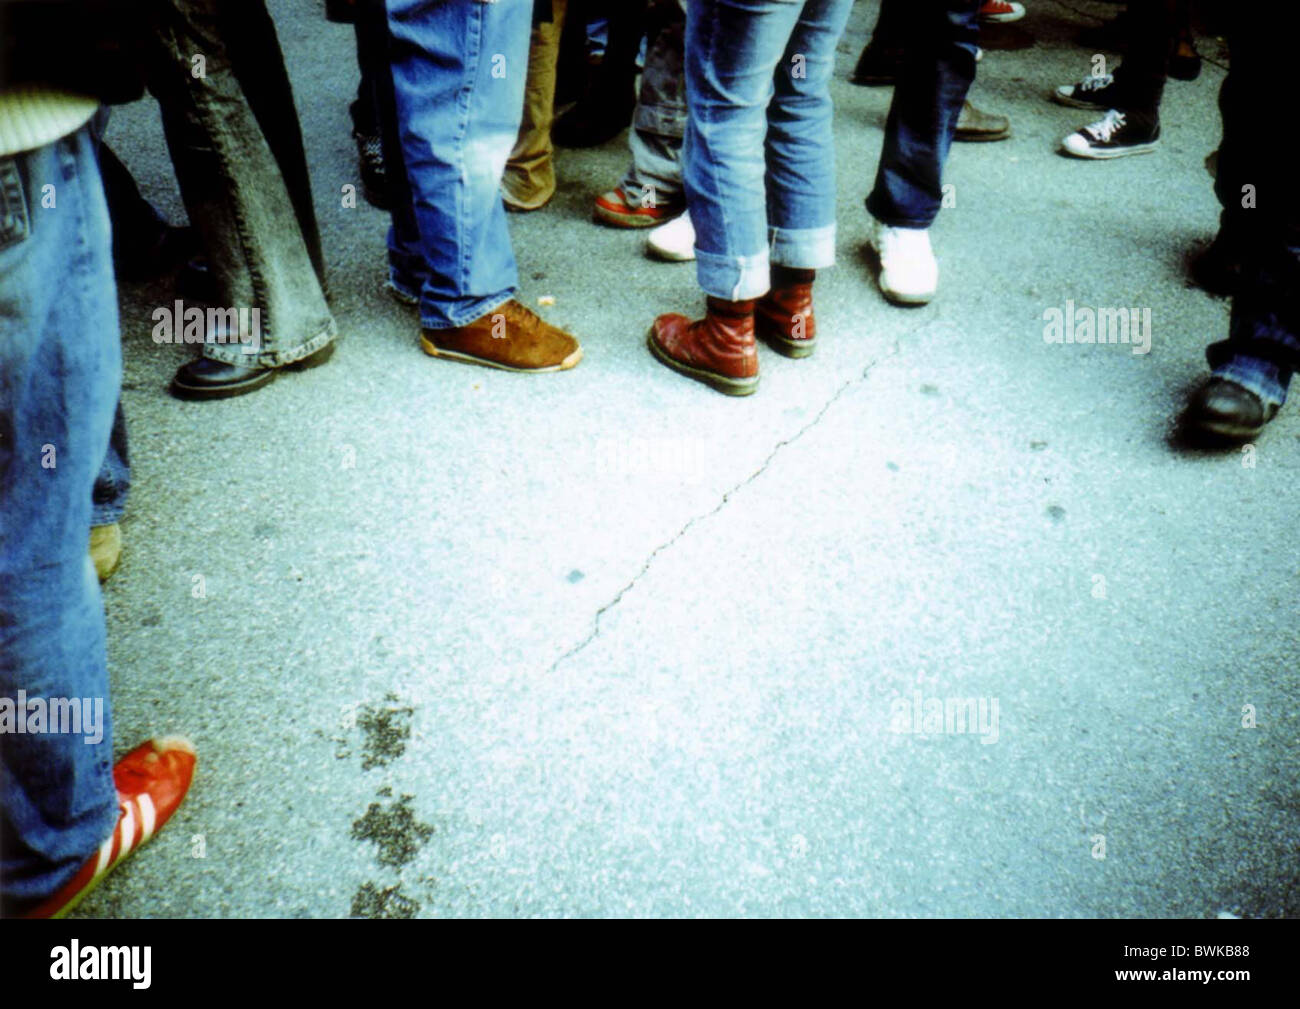 Dettaglio dettaglio del corpo gambe piedi scarpe fondo massa persona folla di persone incontro al di fuori di riunioni Foto Stock